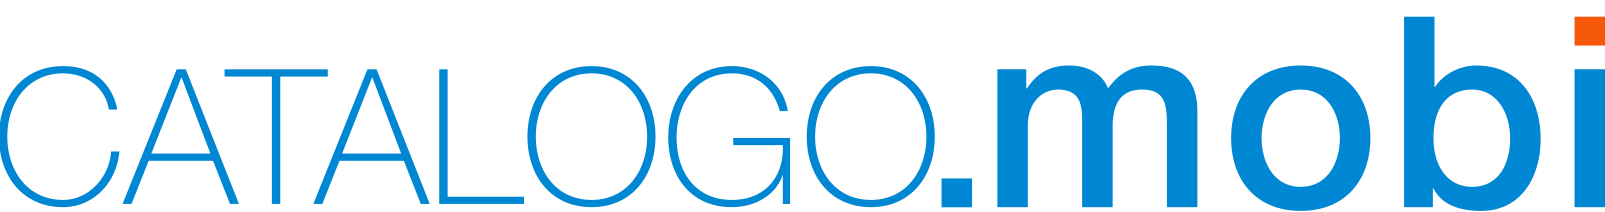 Logo-lungo-menu